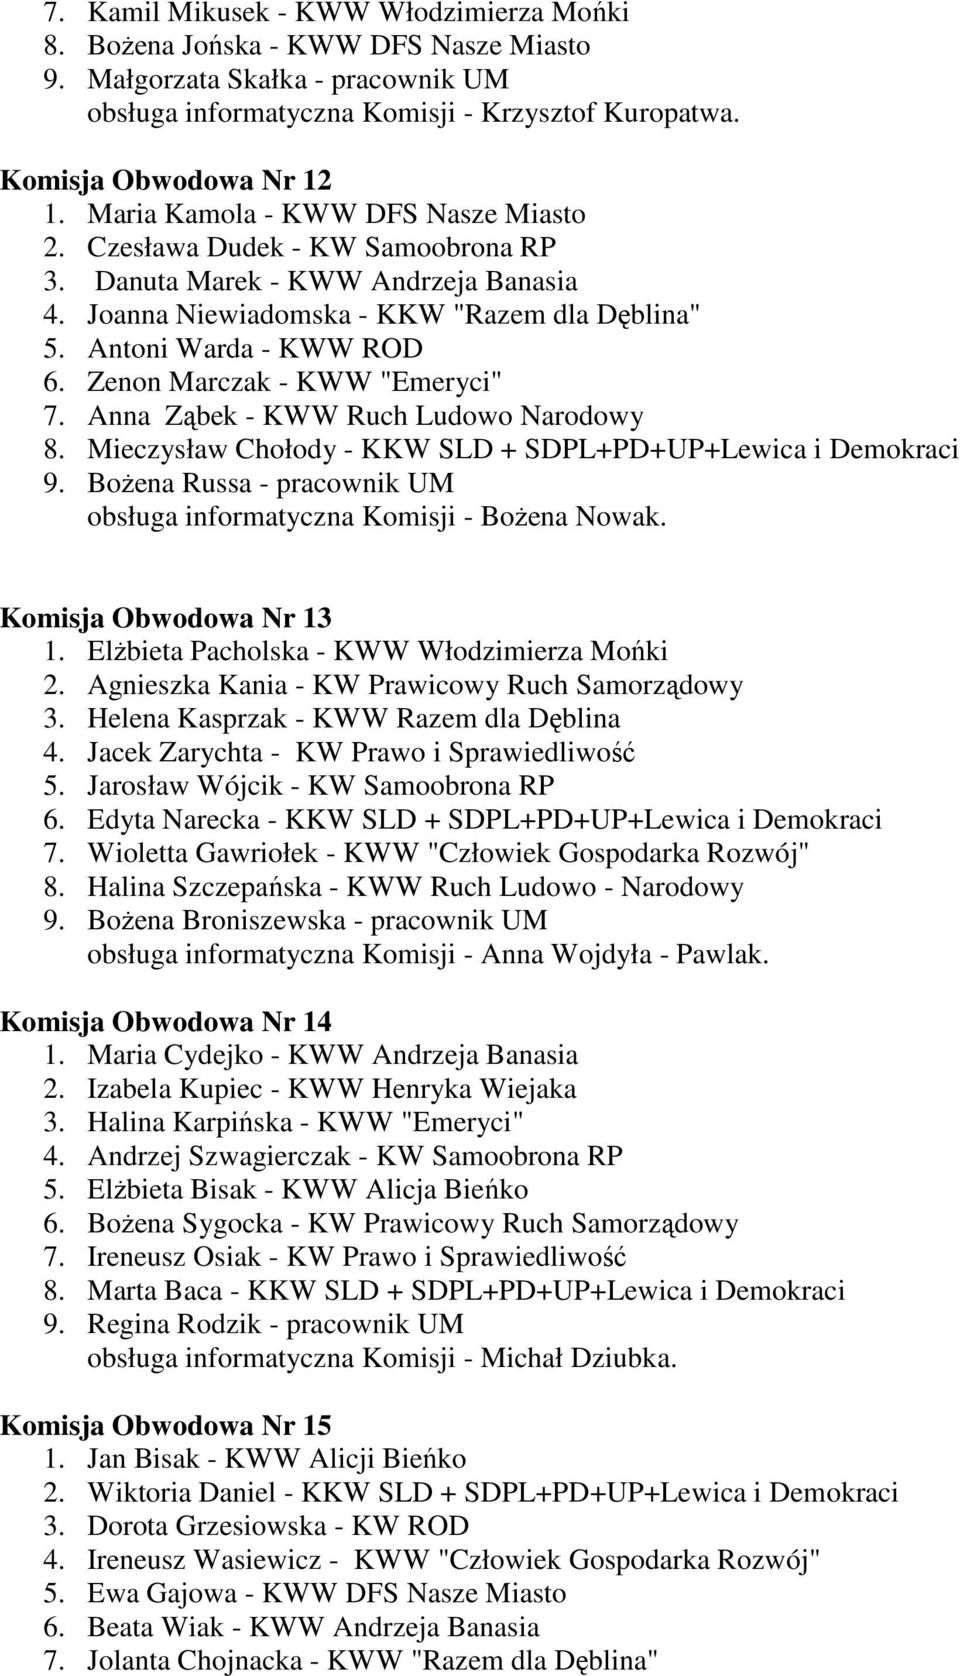 Zenon Marczak - KWW "Emeryci" 7. Anna Ząbek - KWW Ruch Ludowo Narodowy 8. Mieczysław Chołody - KKW SLD + SDPL+PD+UP+Lewica i Demokraci 9.